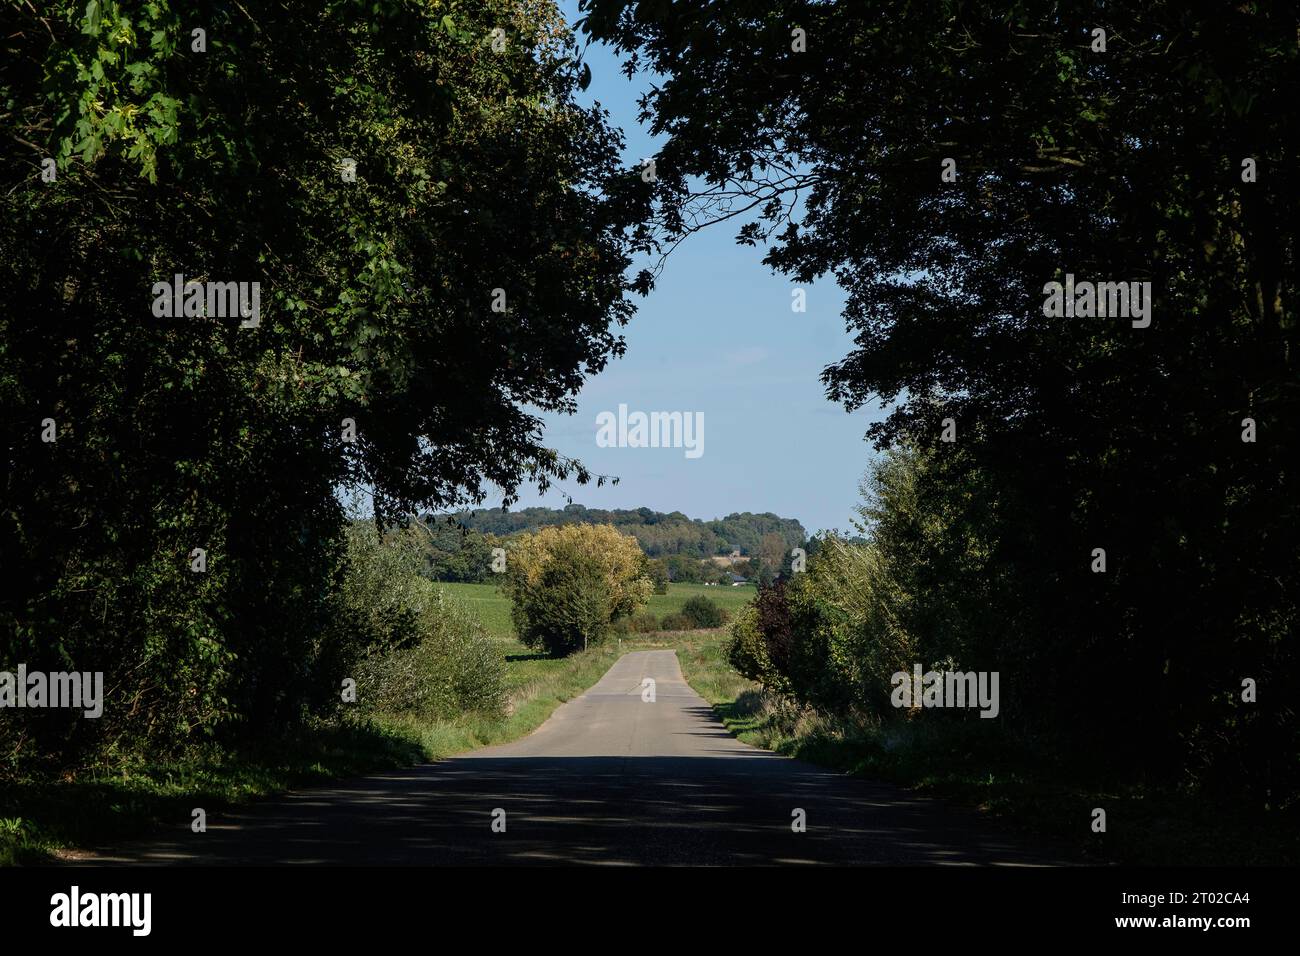 Route de Campagne bordee d'arbres qui donnent l'Impression d'un Tunnel Arbore et qui debouche entre deux champs | baumumrandete Straße in Wallonien Stockfoto